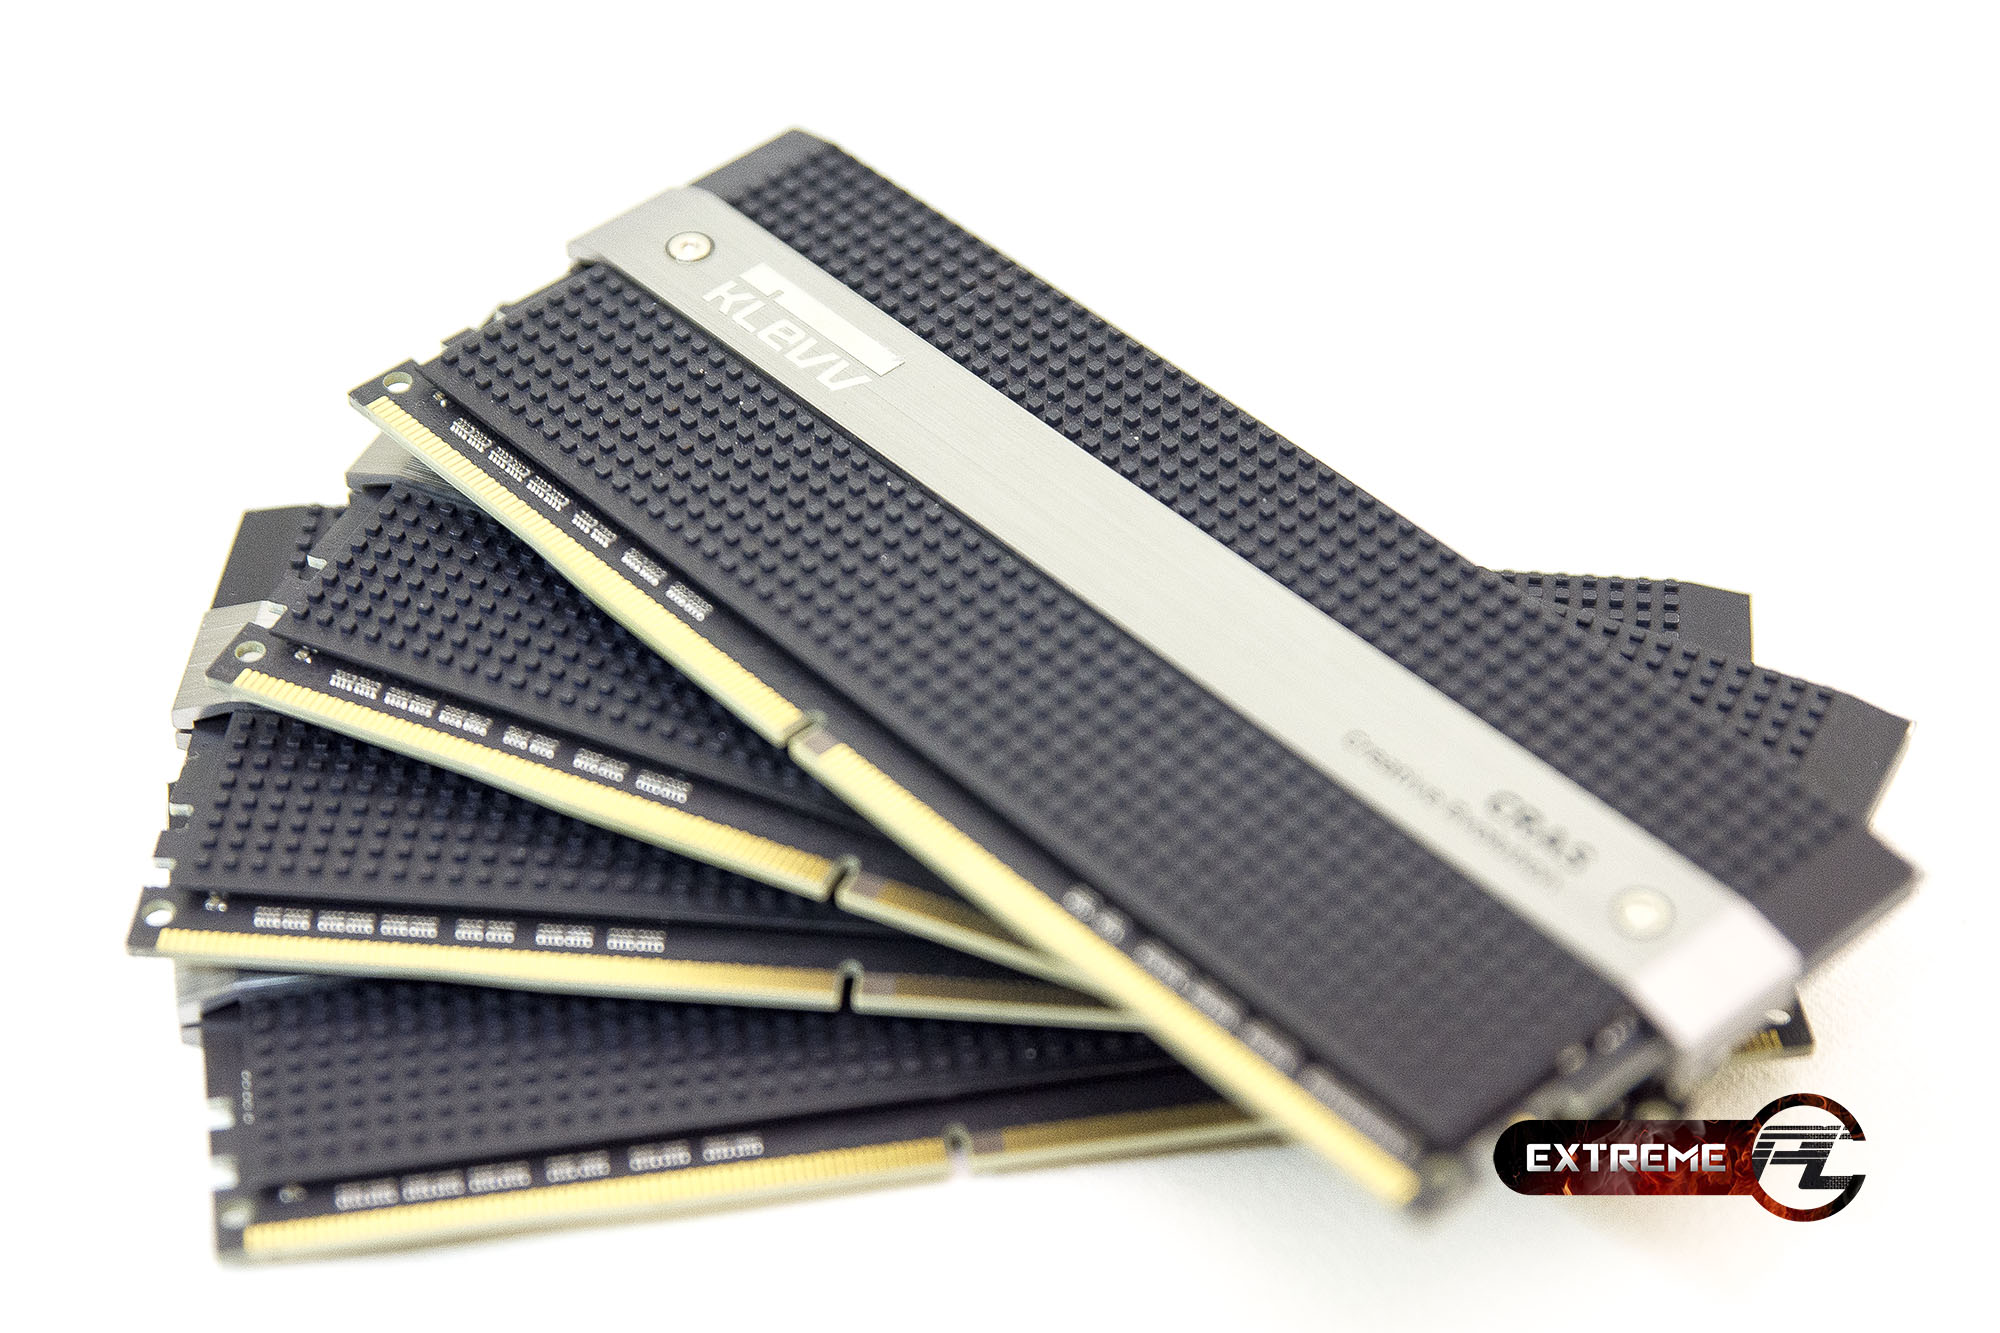 Review: KLEVV CRAS DDR4-2133 C15-15-15-35 8GBX4 1.2V หน่วยความจำสุดไฮโซ